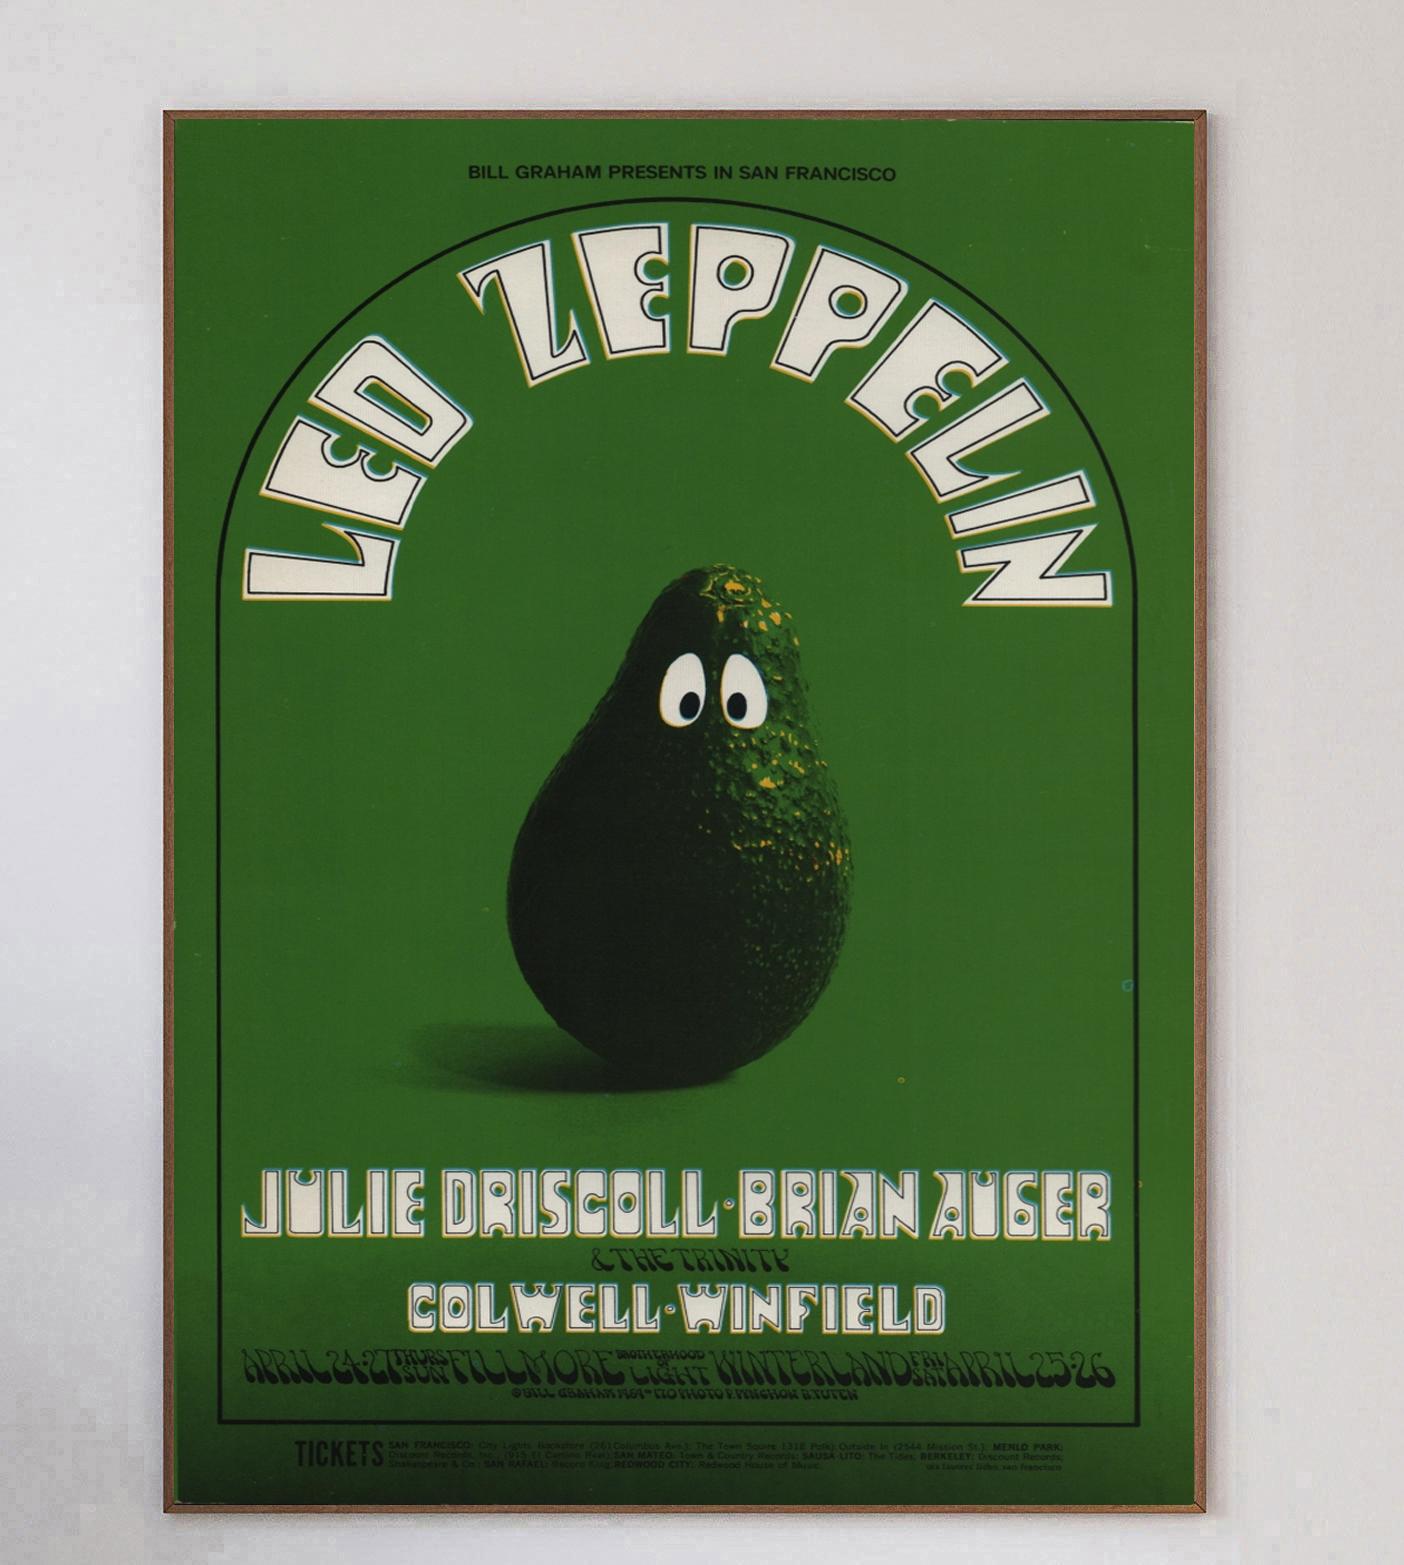 Dieses wunderschöne Plakat wurde 1969 von dem legendären Konzertplakatkünstler Randy Tuten zusammen mit Peter Pynchon entworfen, um ein Live-Konzert von Led Zeppelin im weltberühmten Fillmore in San Francisco zu bewerben. Bill Graham-Veranstaltungen